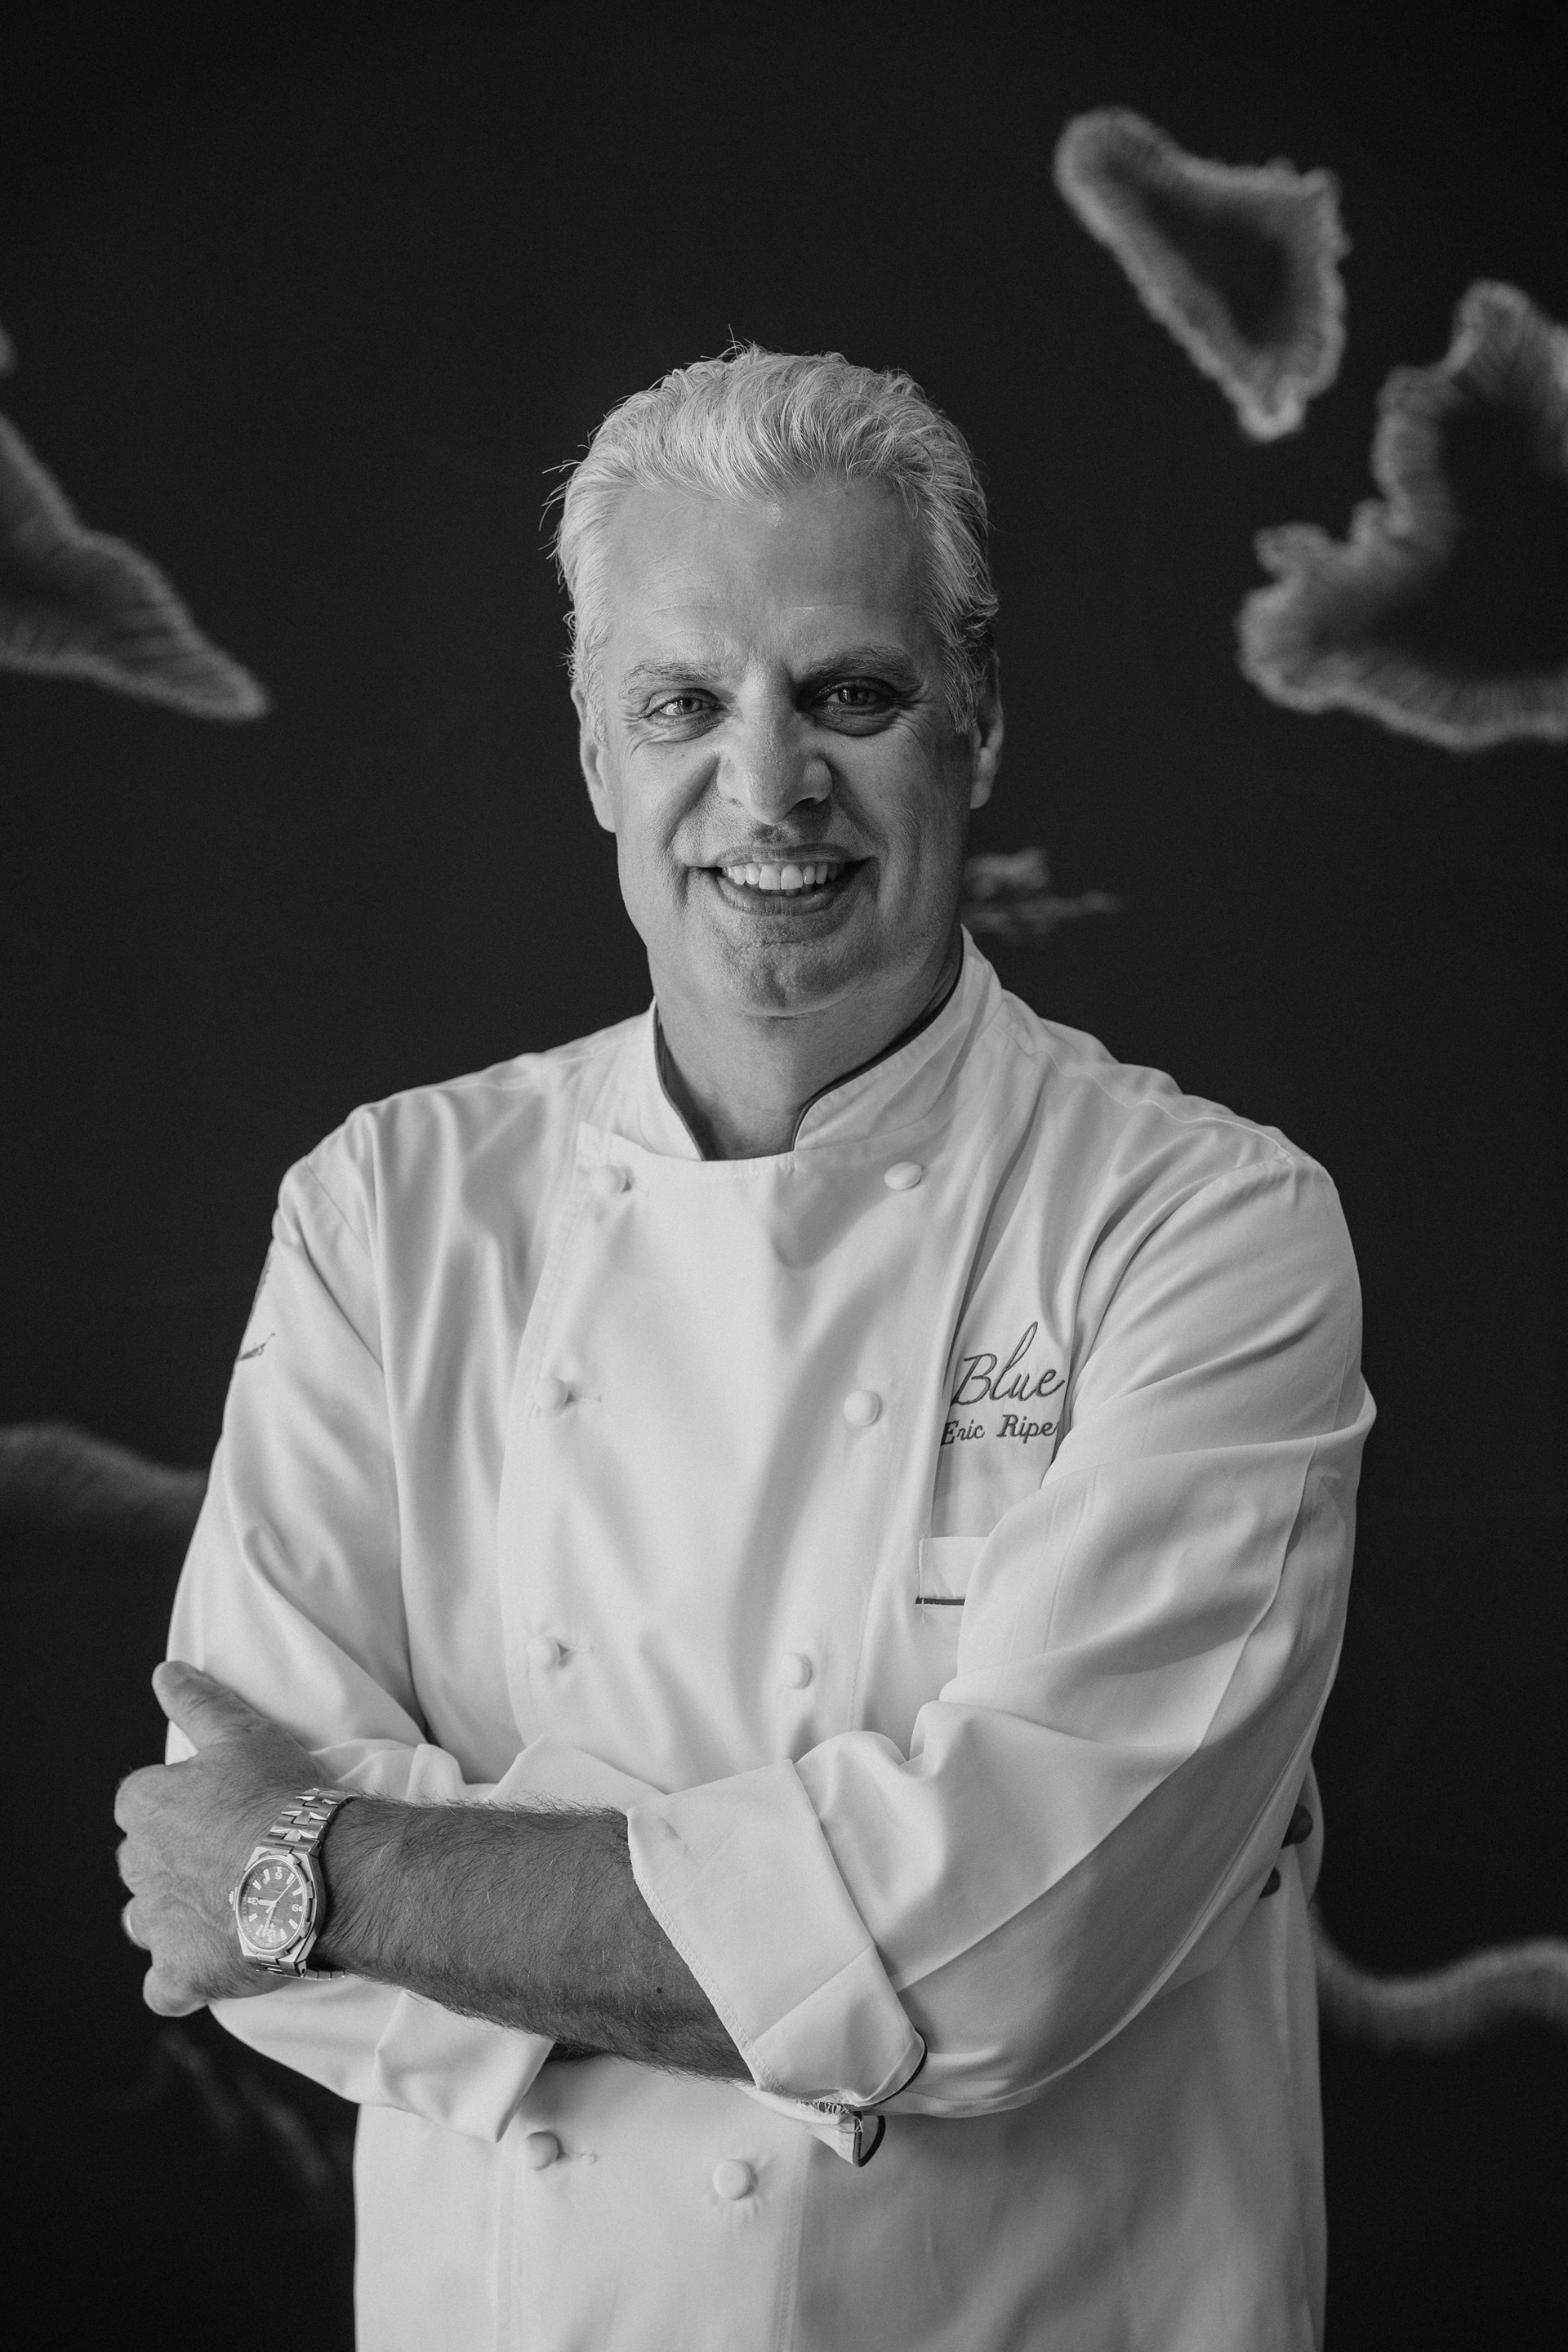 Black & white photo of chef